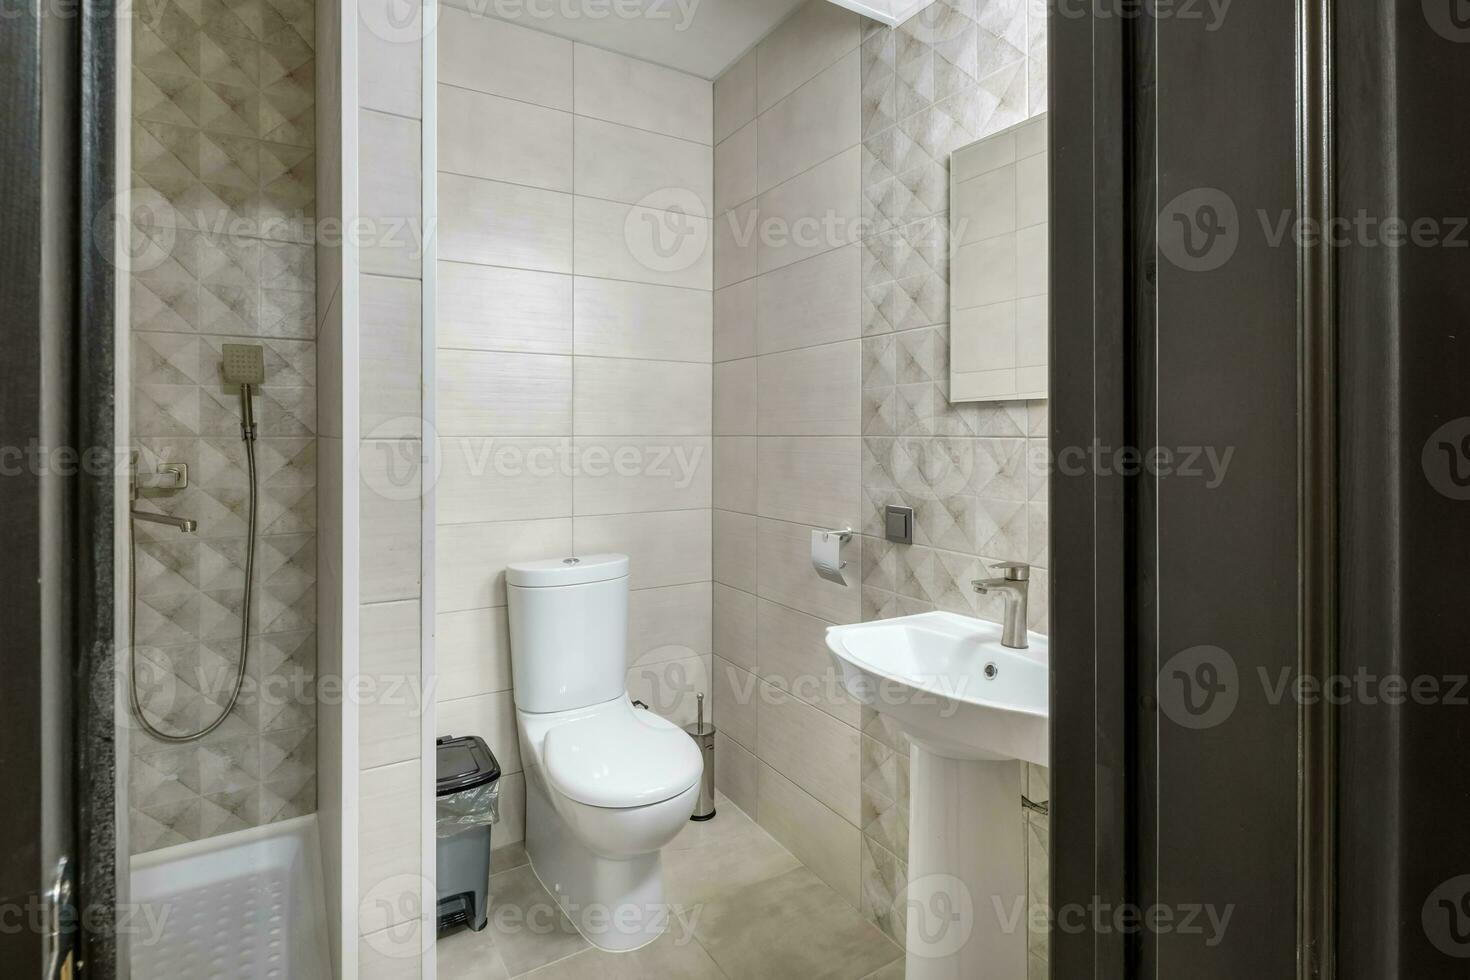 toilettes et détail d'une cabine de douche d'angle avec fixation murale pour douche photo